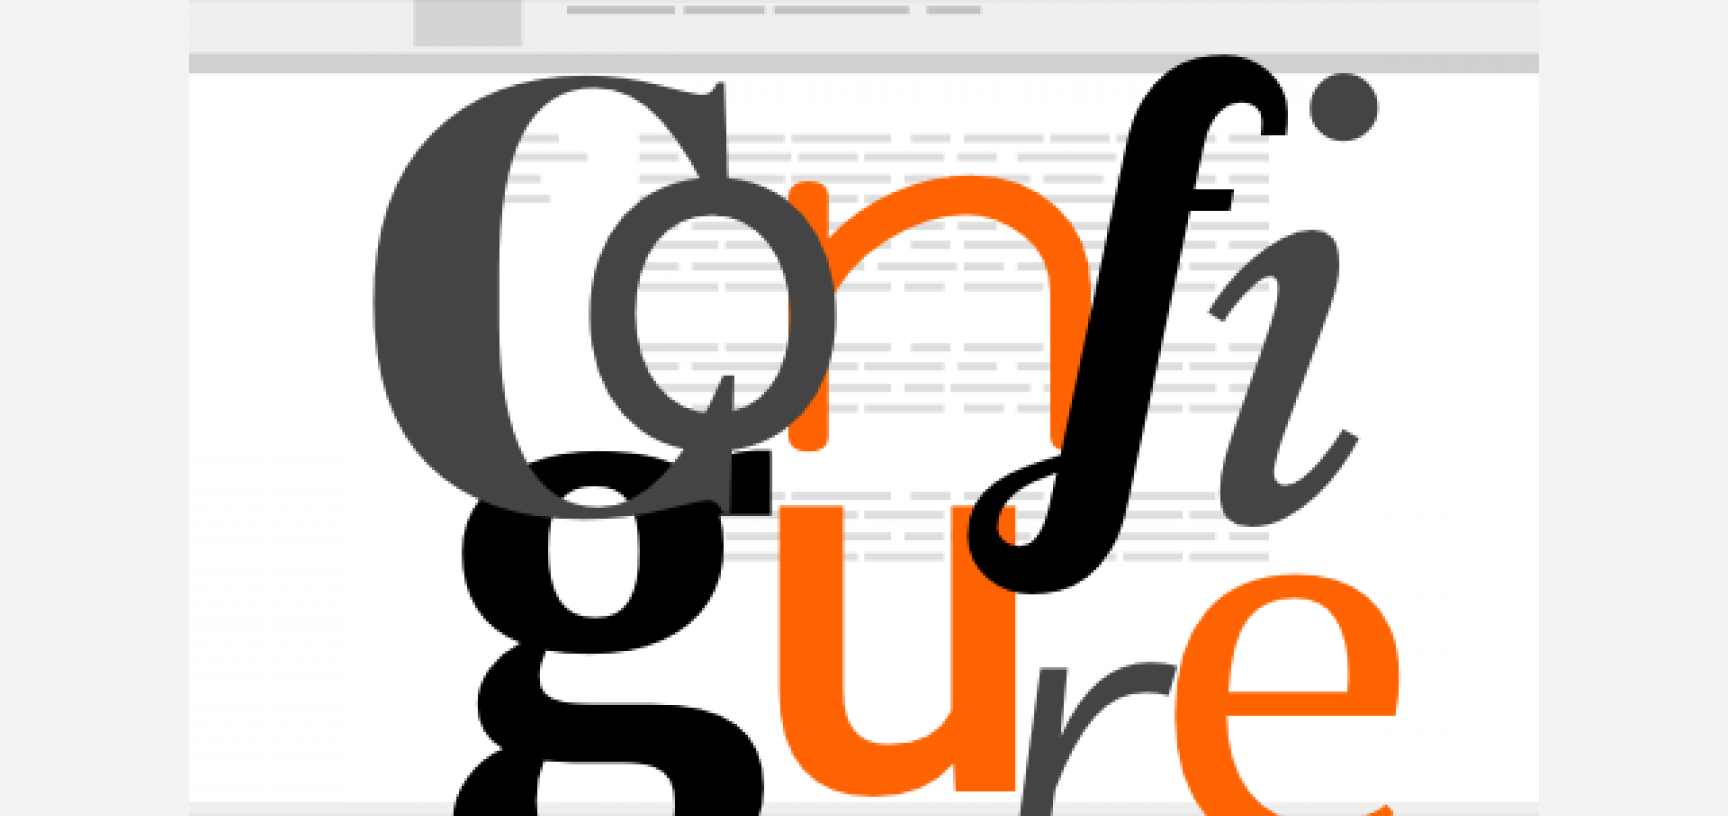 patternbook font config